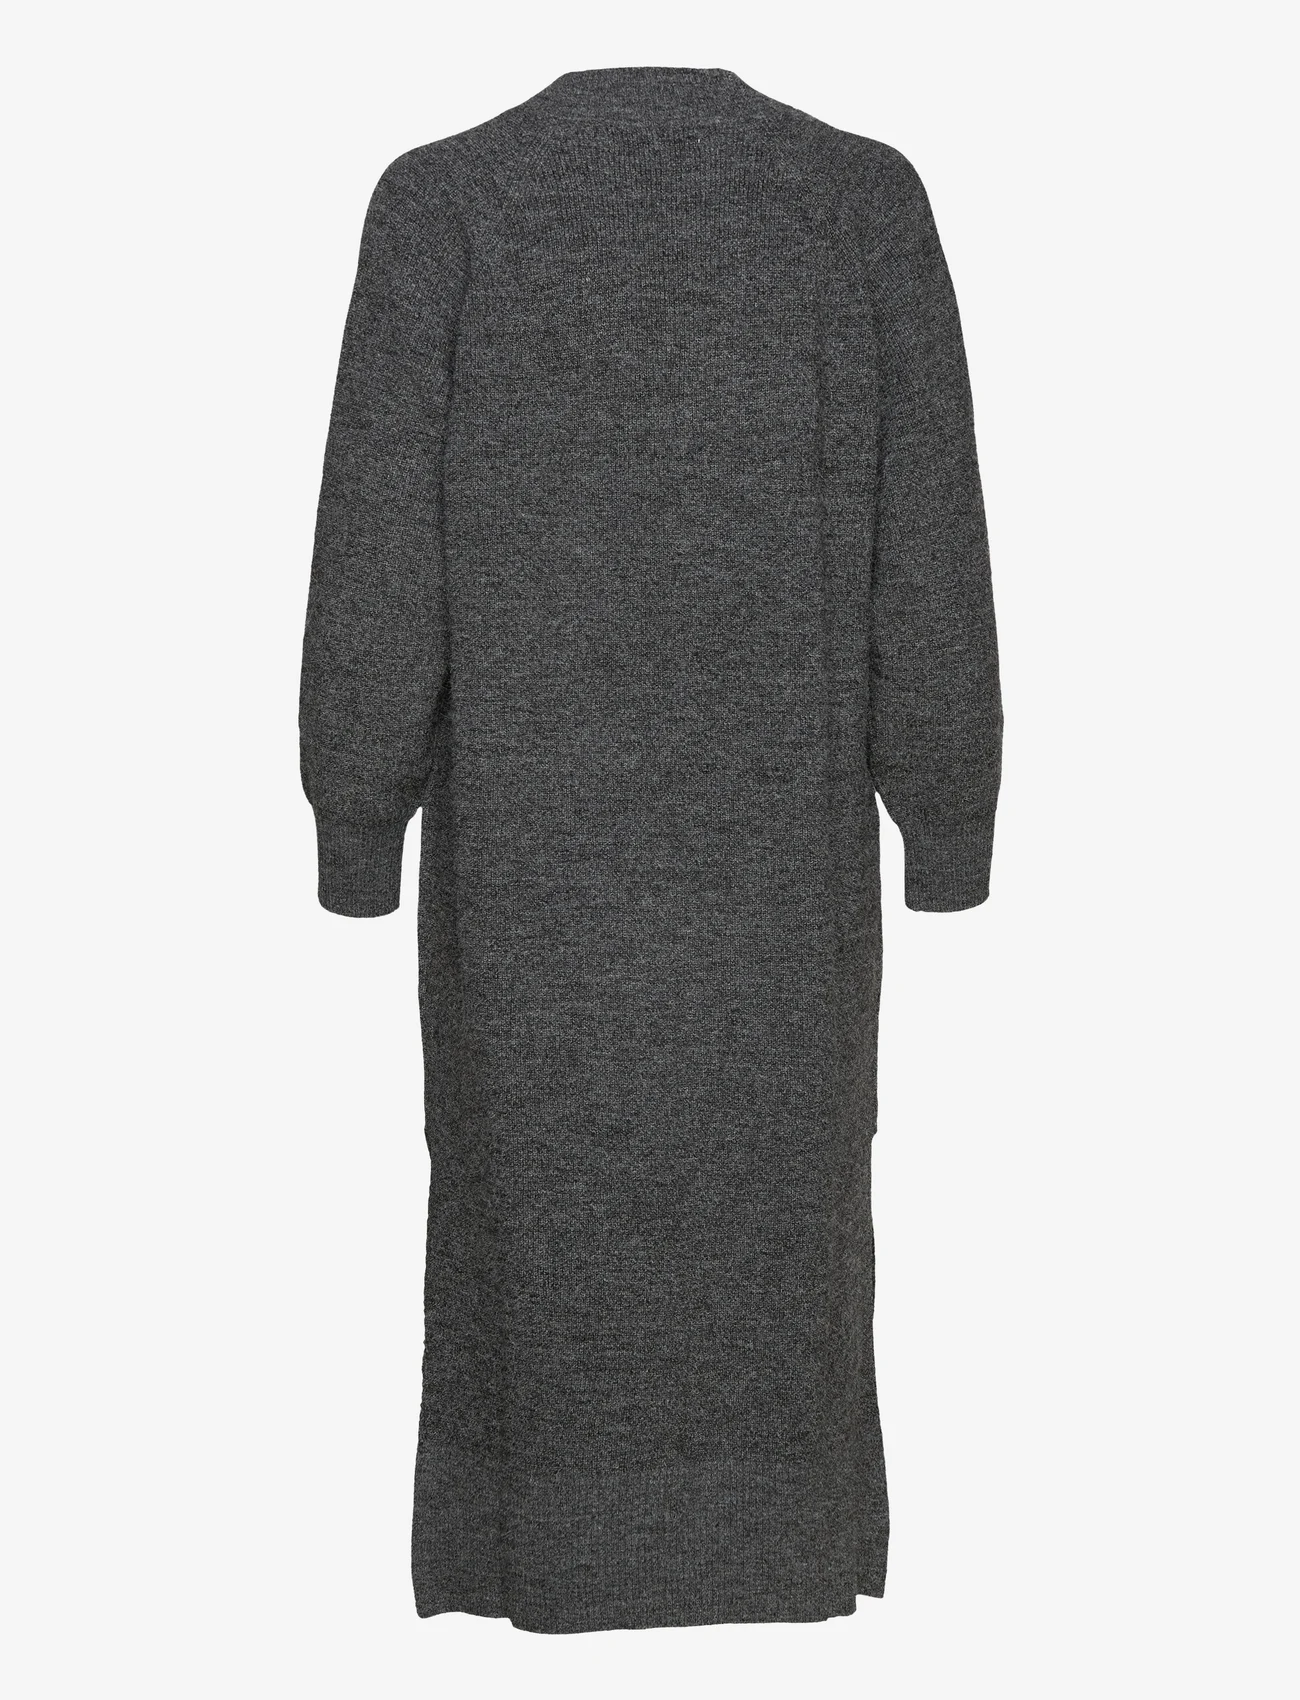 Karen By Simonsen - EminaKB Knit Dress - strikkjoler - dark gray melange - 1